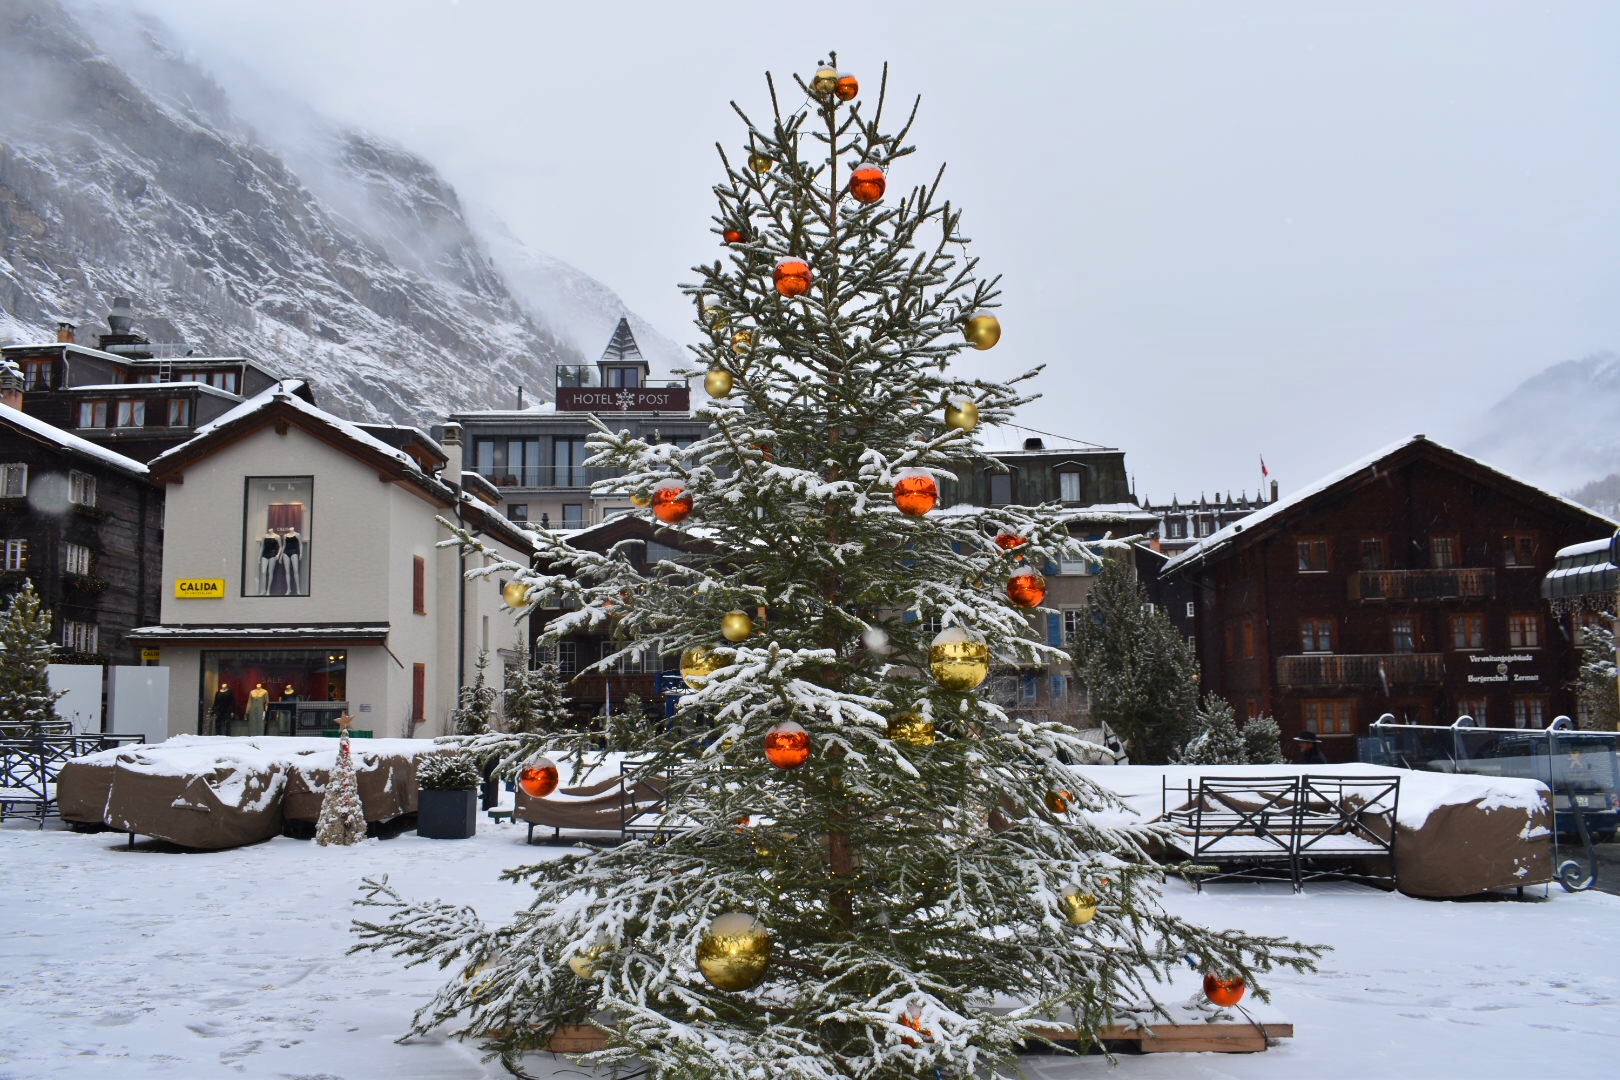 A Christmas tree in Zermatt